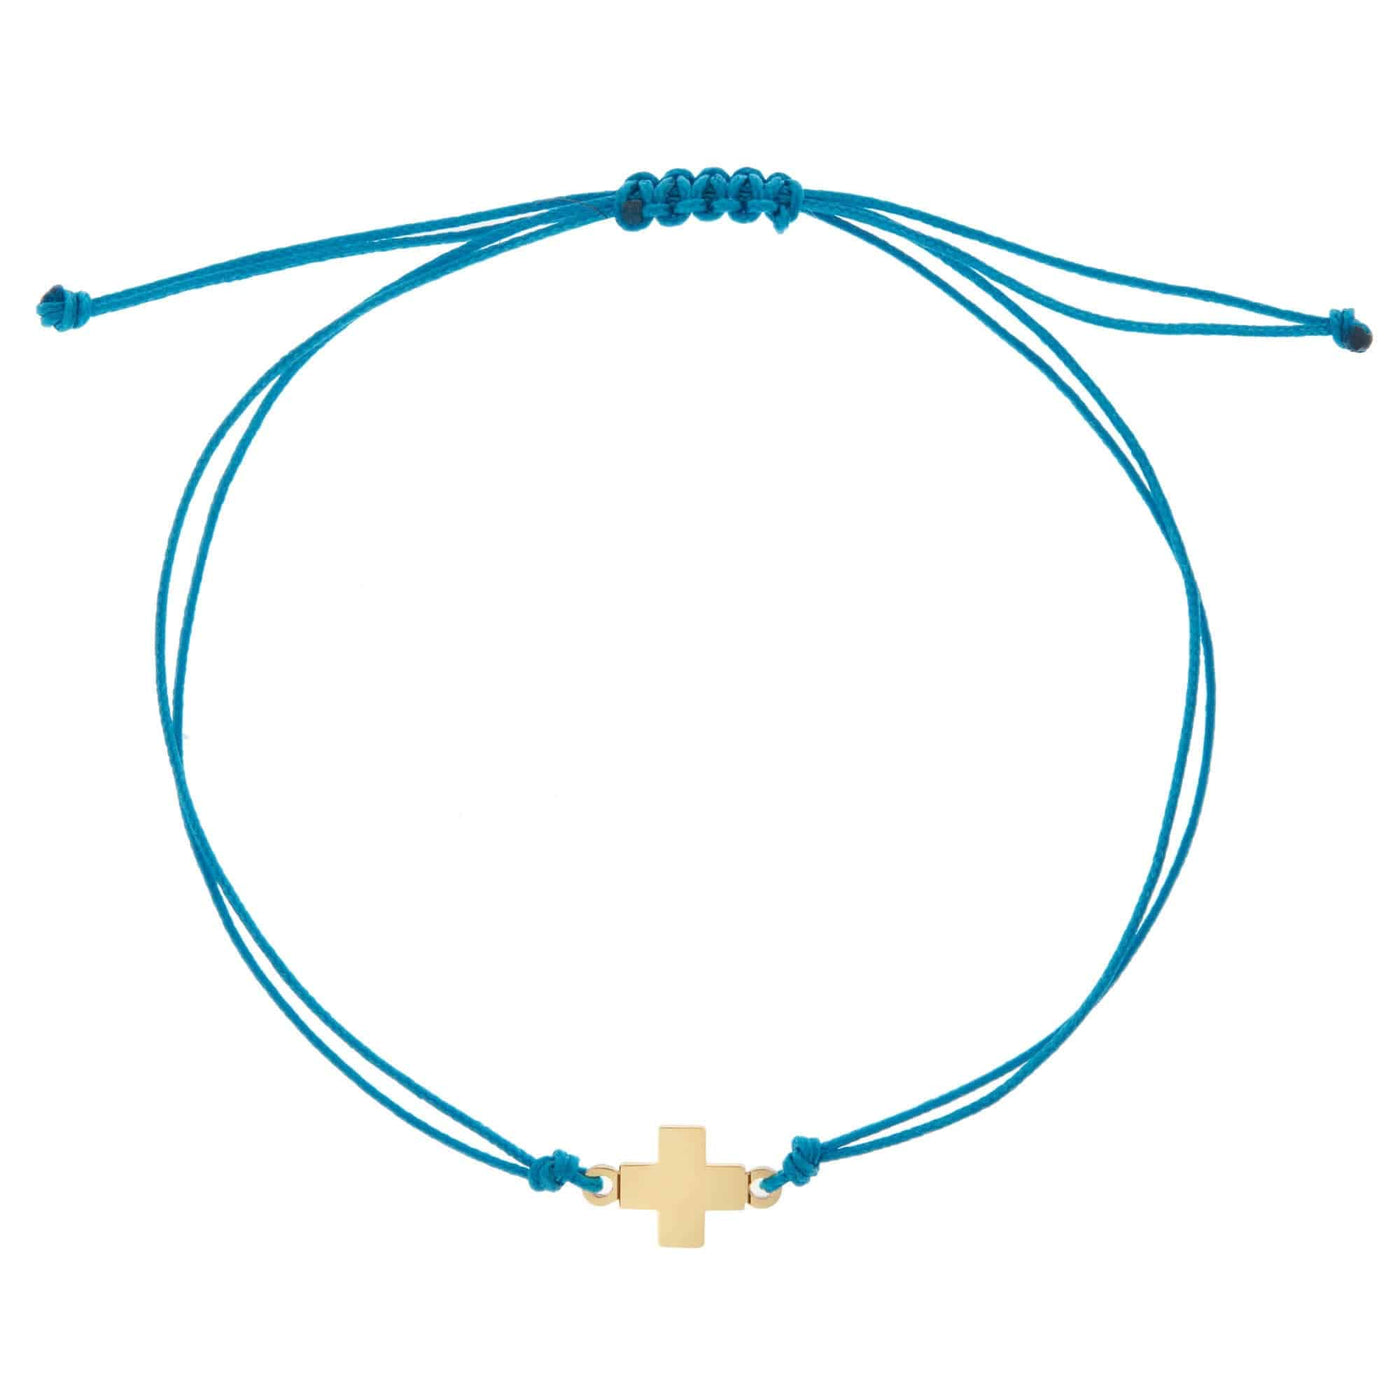 Cross Cord Bracelet Y10 - Eye M Summer - Ileana Makri store